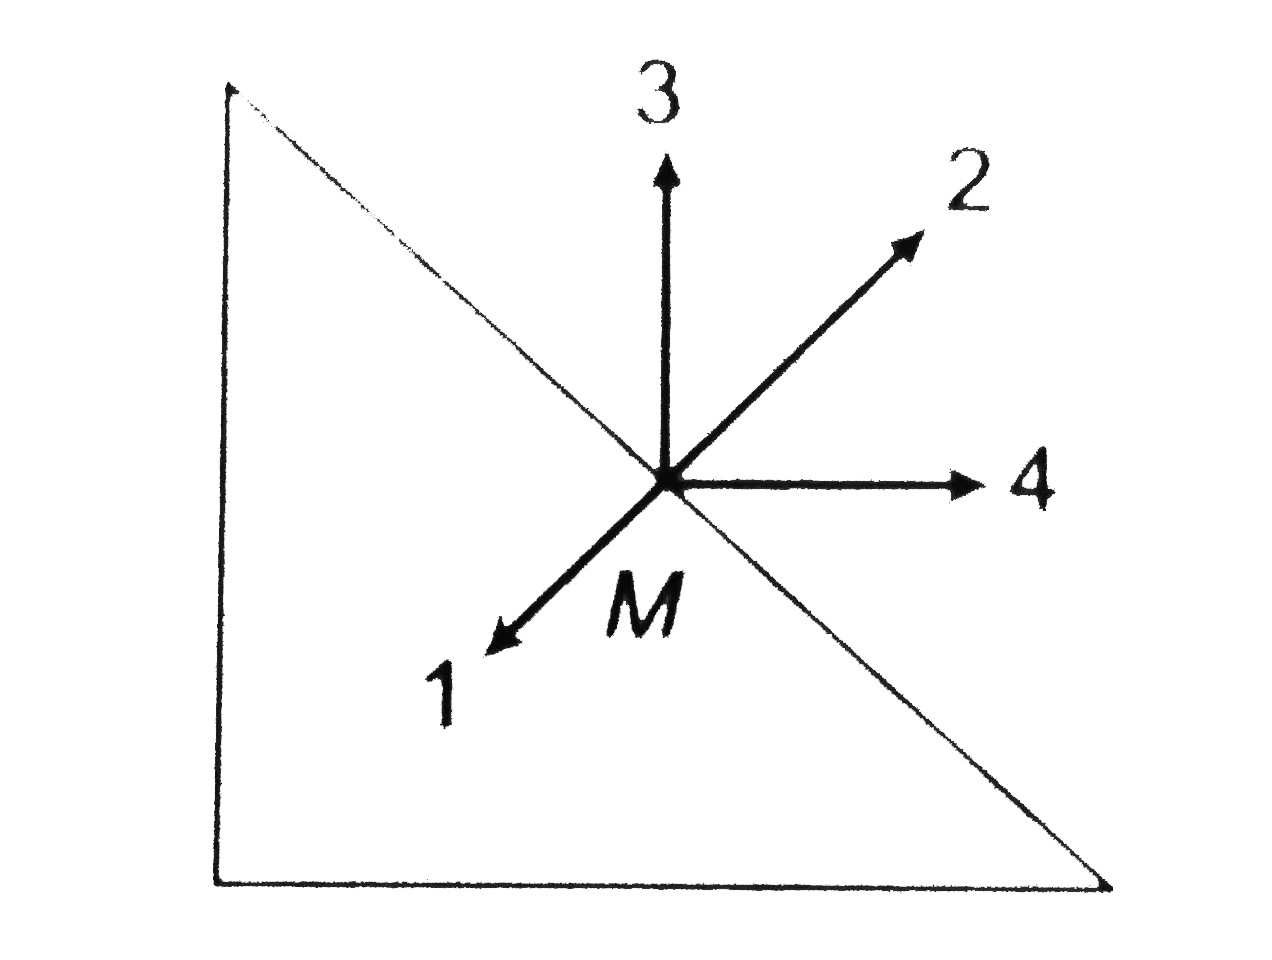 isosceles triangle perimeter hypotenuse